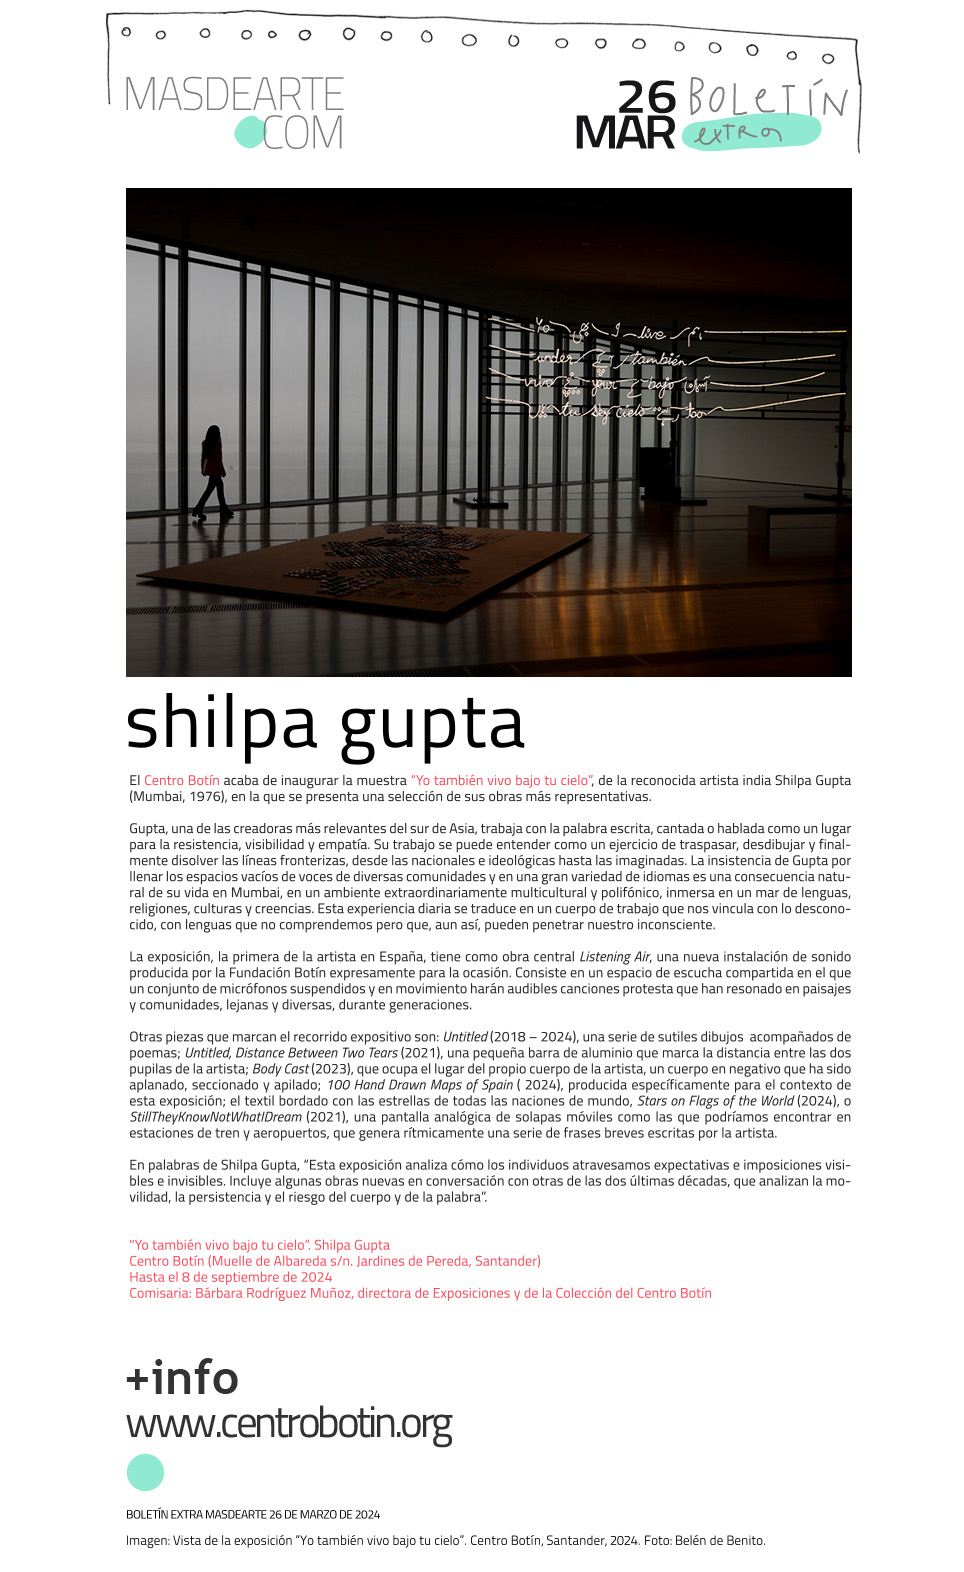 Extra masdearte: o también vivo bajo tu cielo, exposición de Shilpa
 Gupta en el Centro Botín